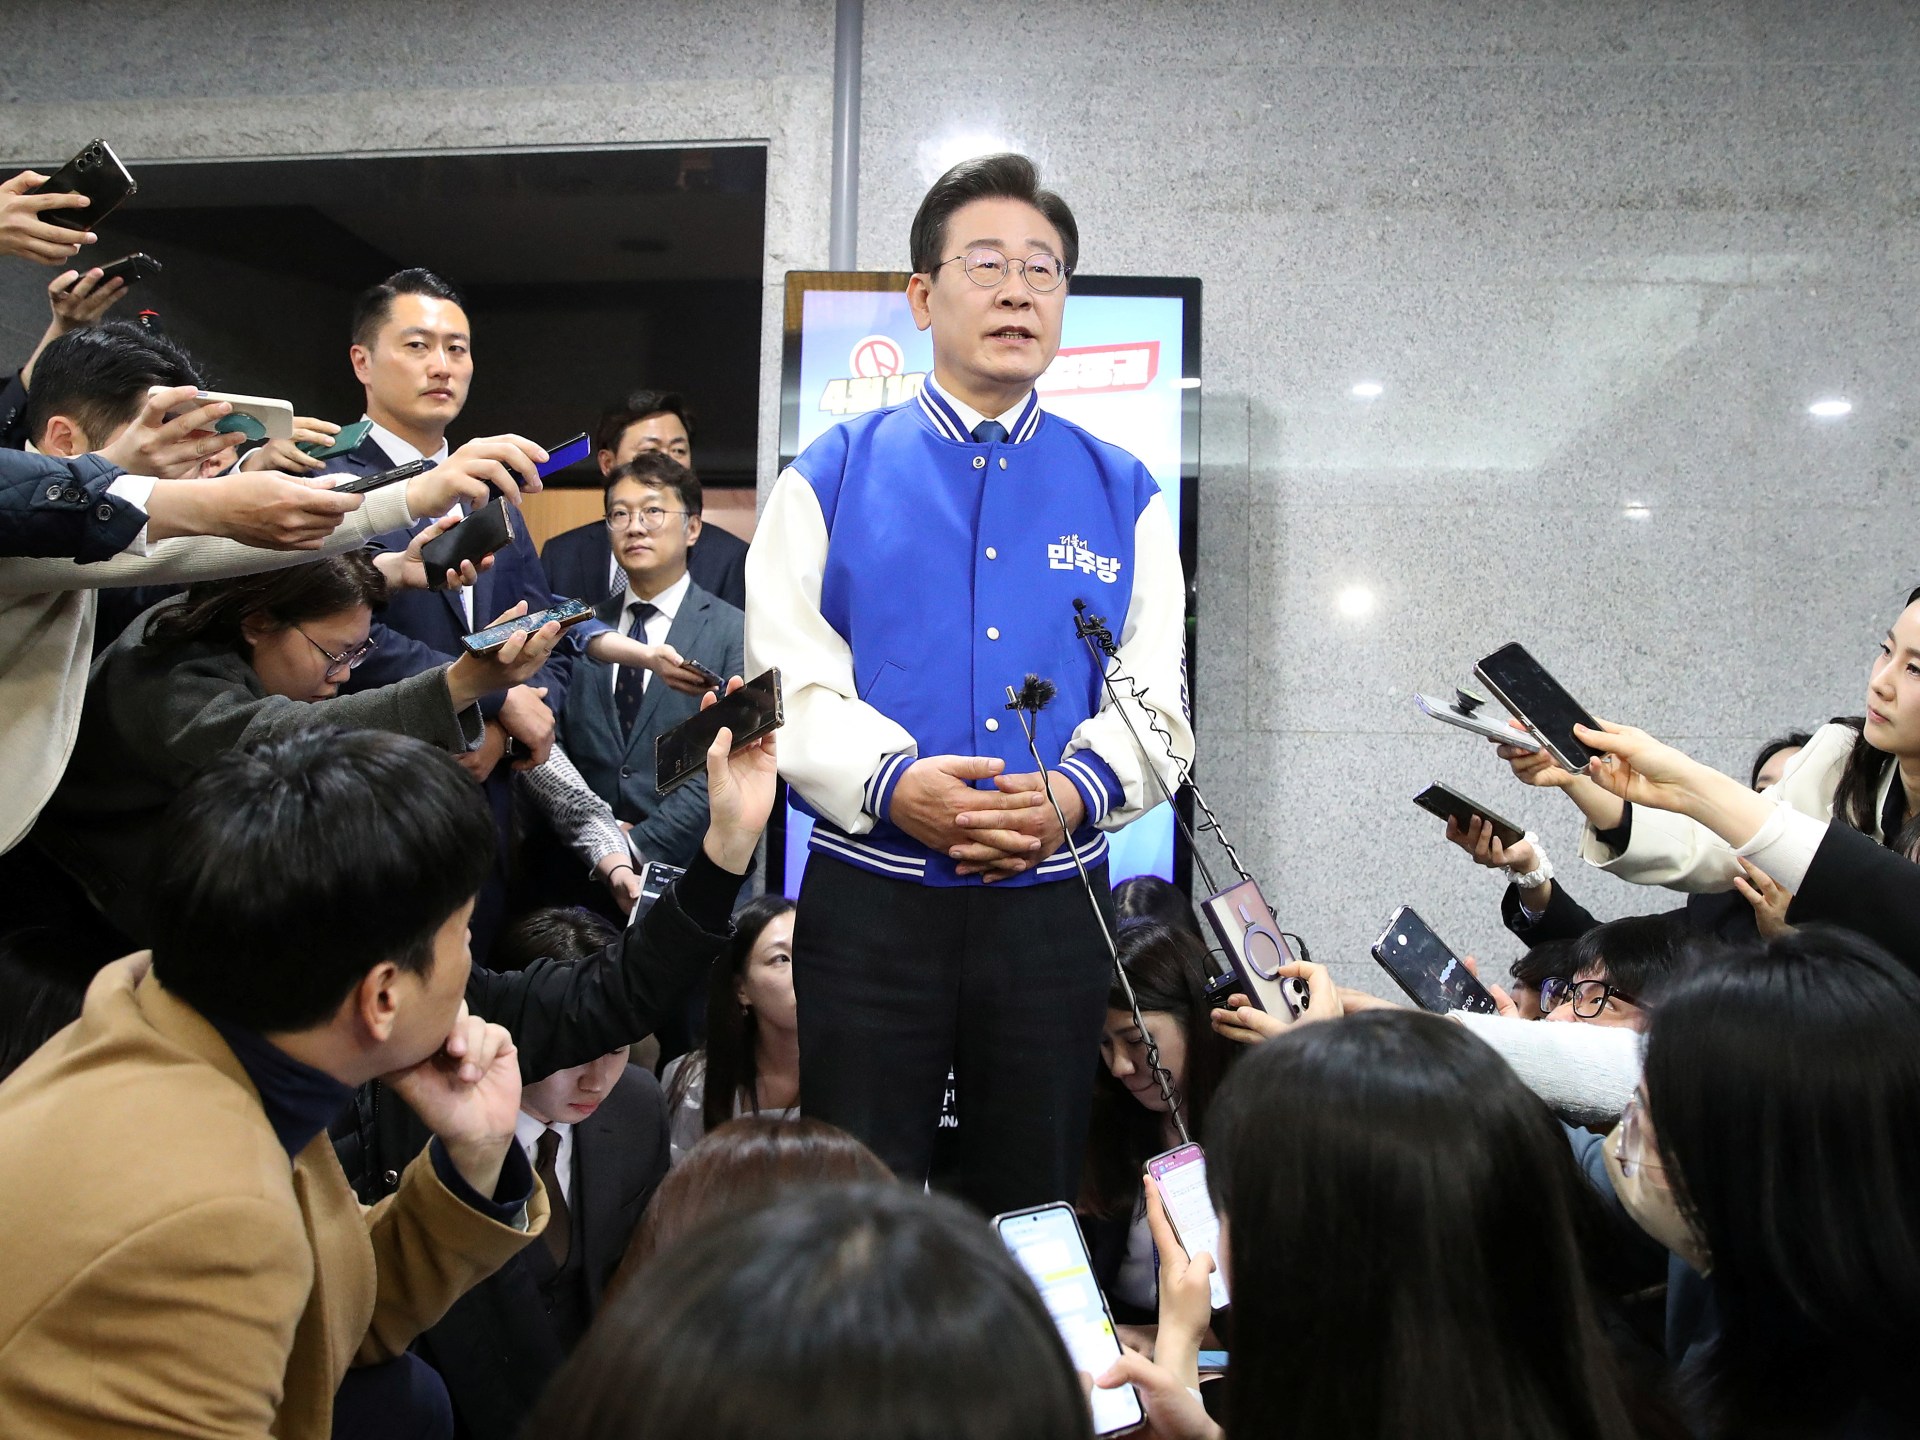 한국 선거: 여론조사 결과 야당의 과반 득표율 증가 |  선거 뉴스